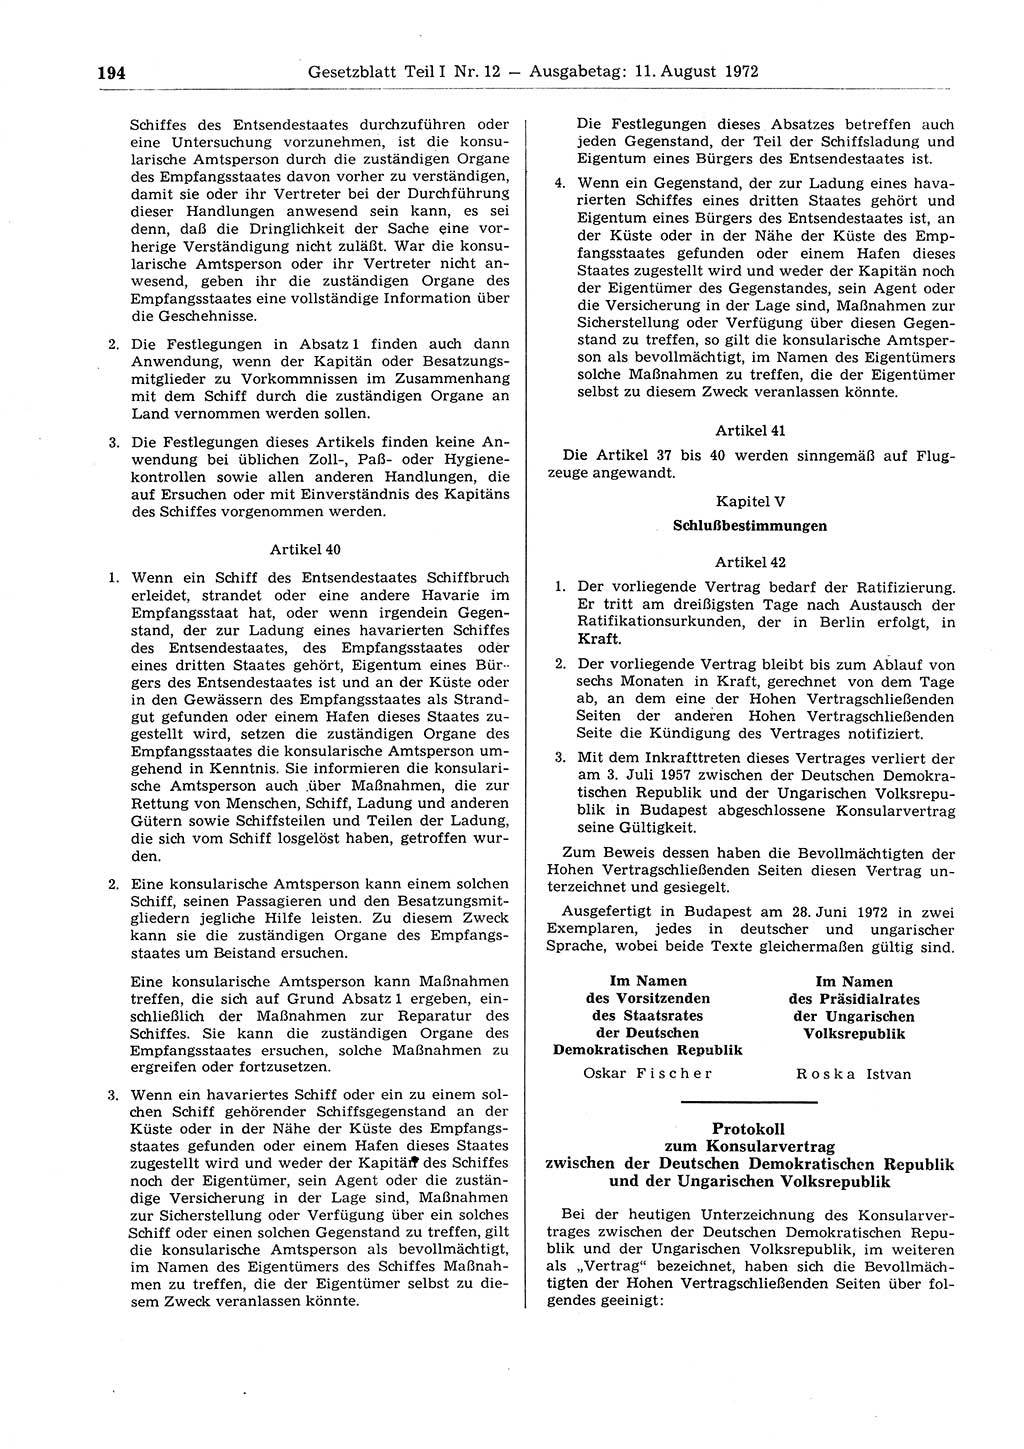 Gesetzblatt (GBl.) der Deutschen Demokratischen Republik (DDR) Teil Ⅰ 1972, Seite 194 (GBl. DDR Ⅰ 1972, S. 194)